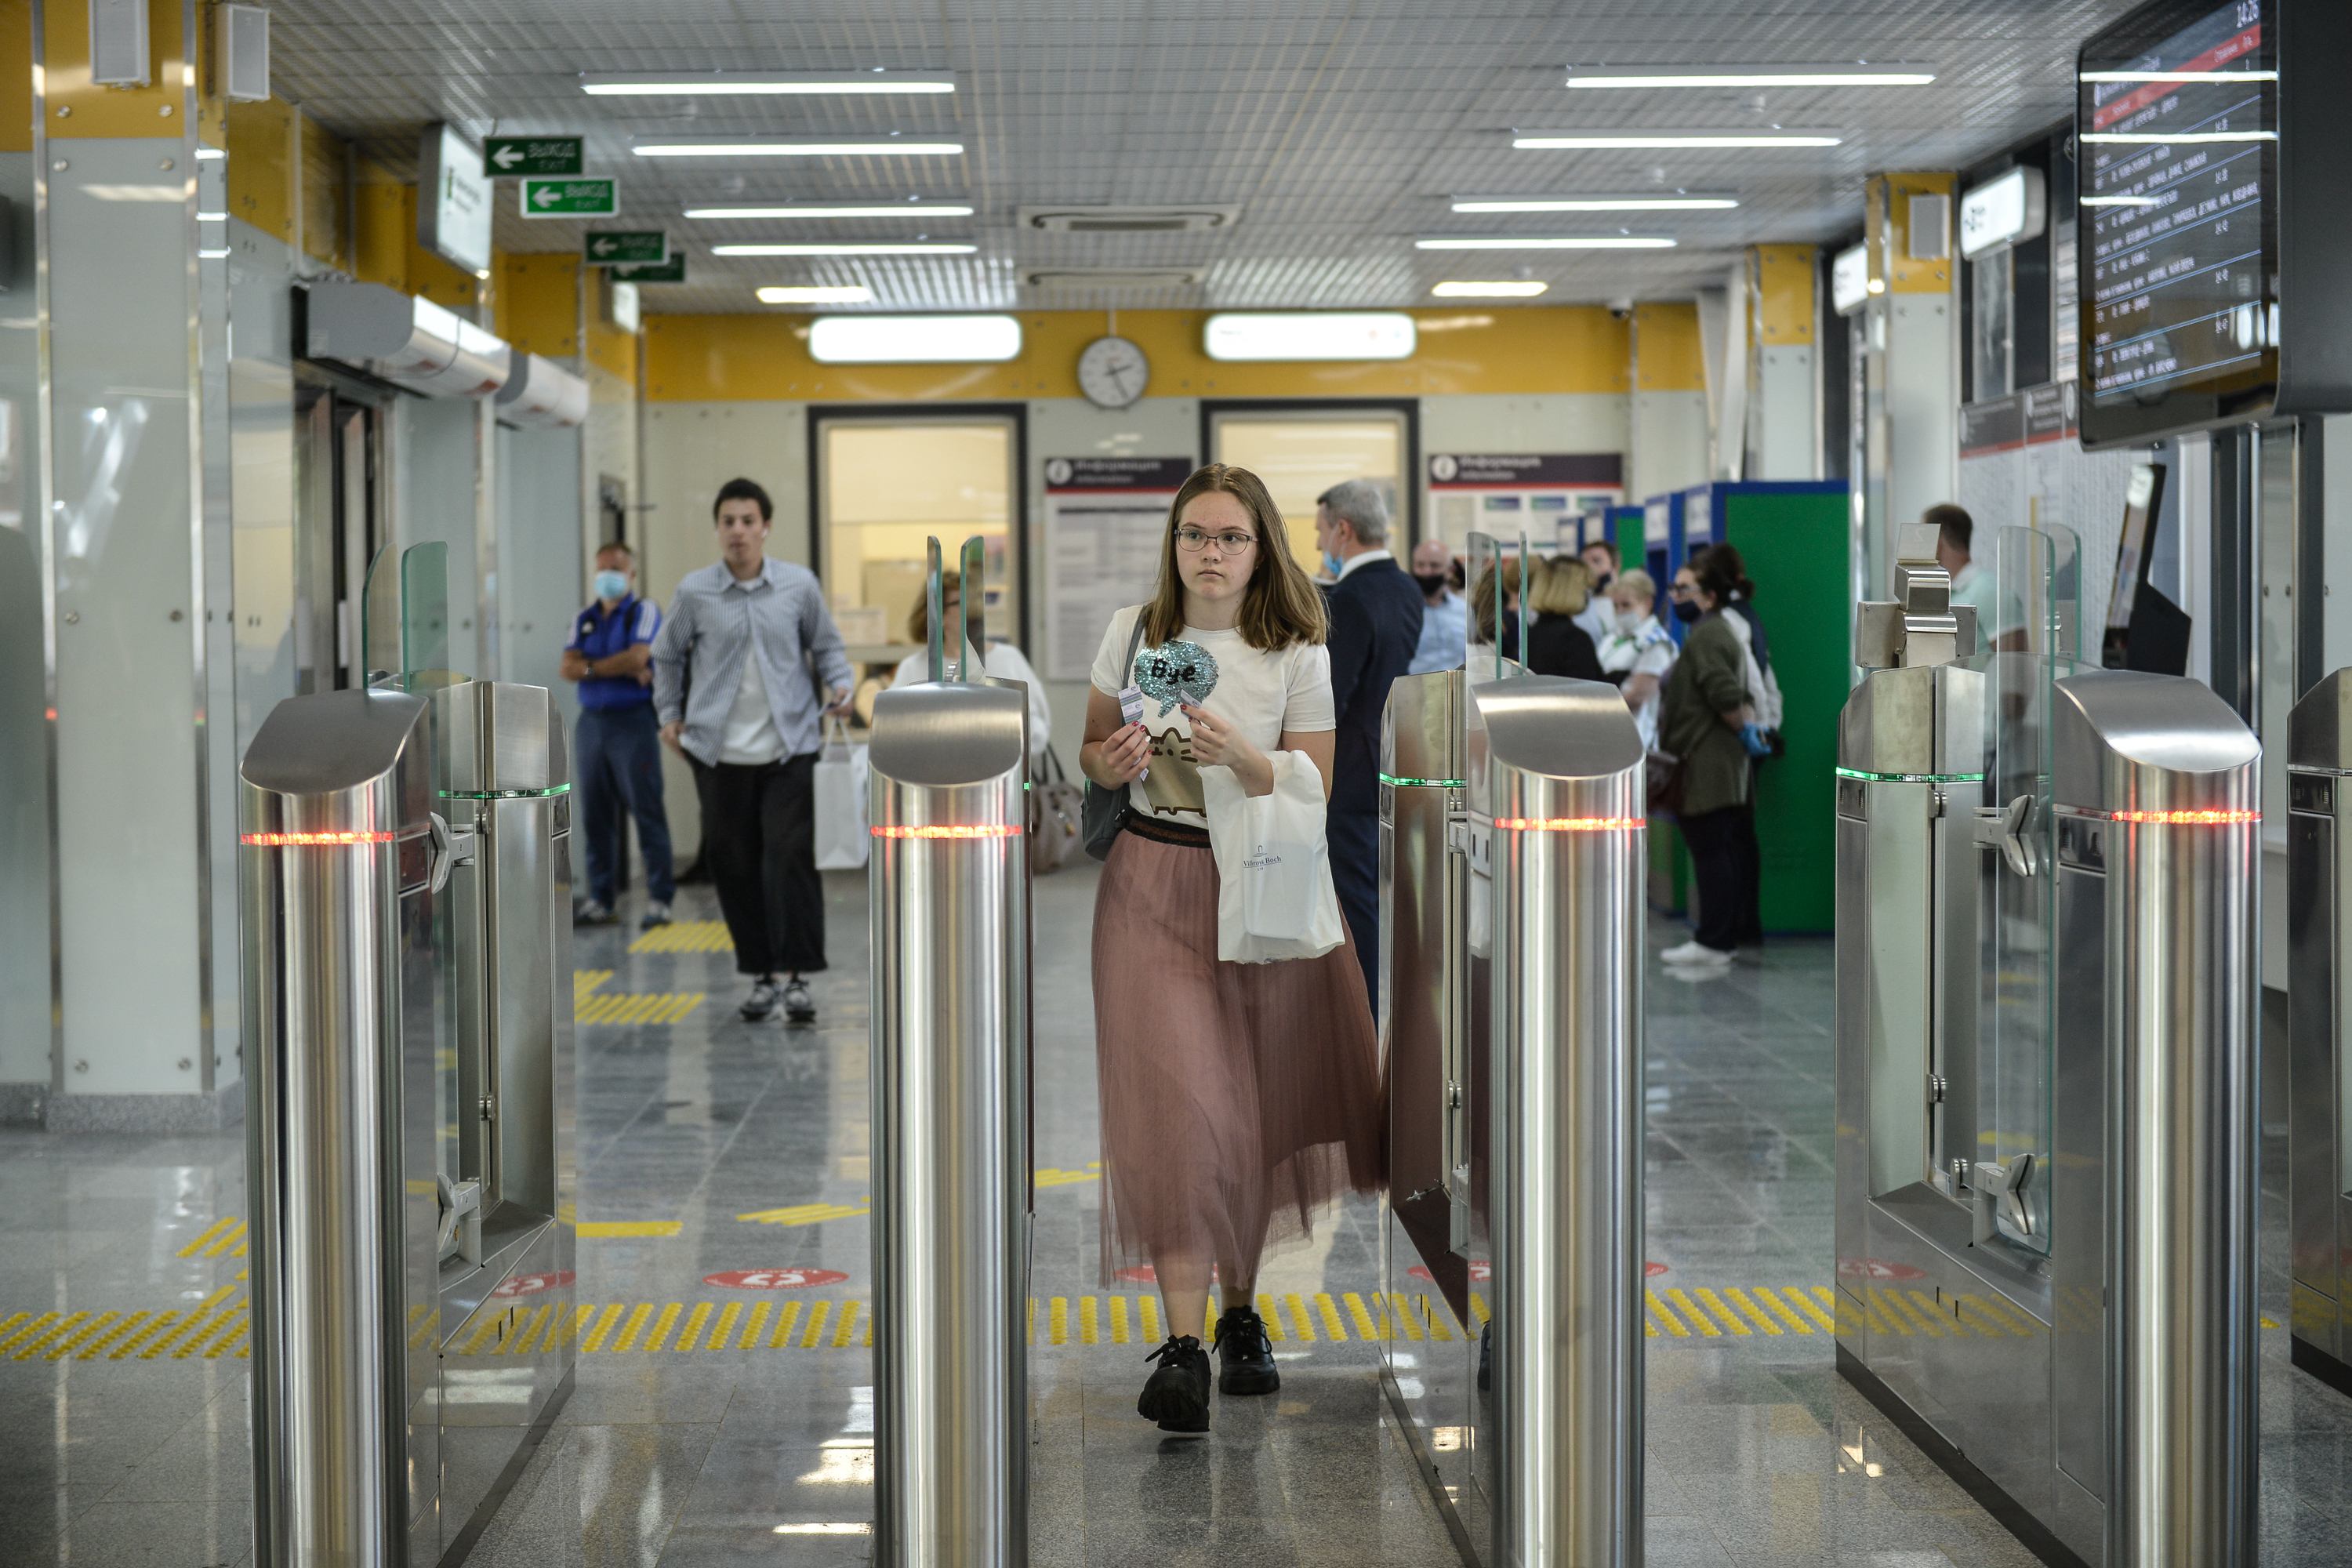 Бесплатная пересадка с МЦД на метро востребована у 75 процентов пассажиров с «Тройкой»